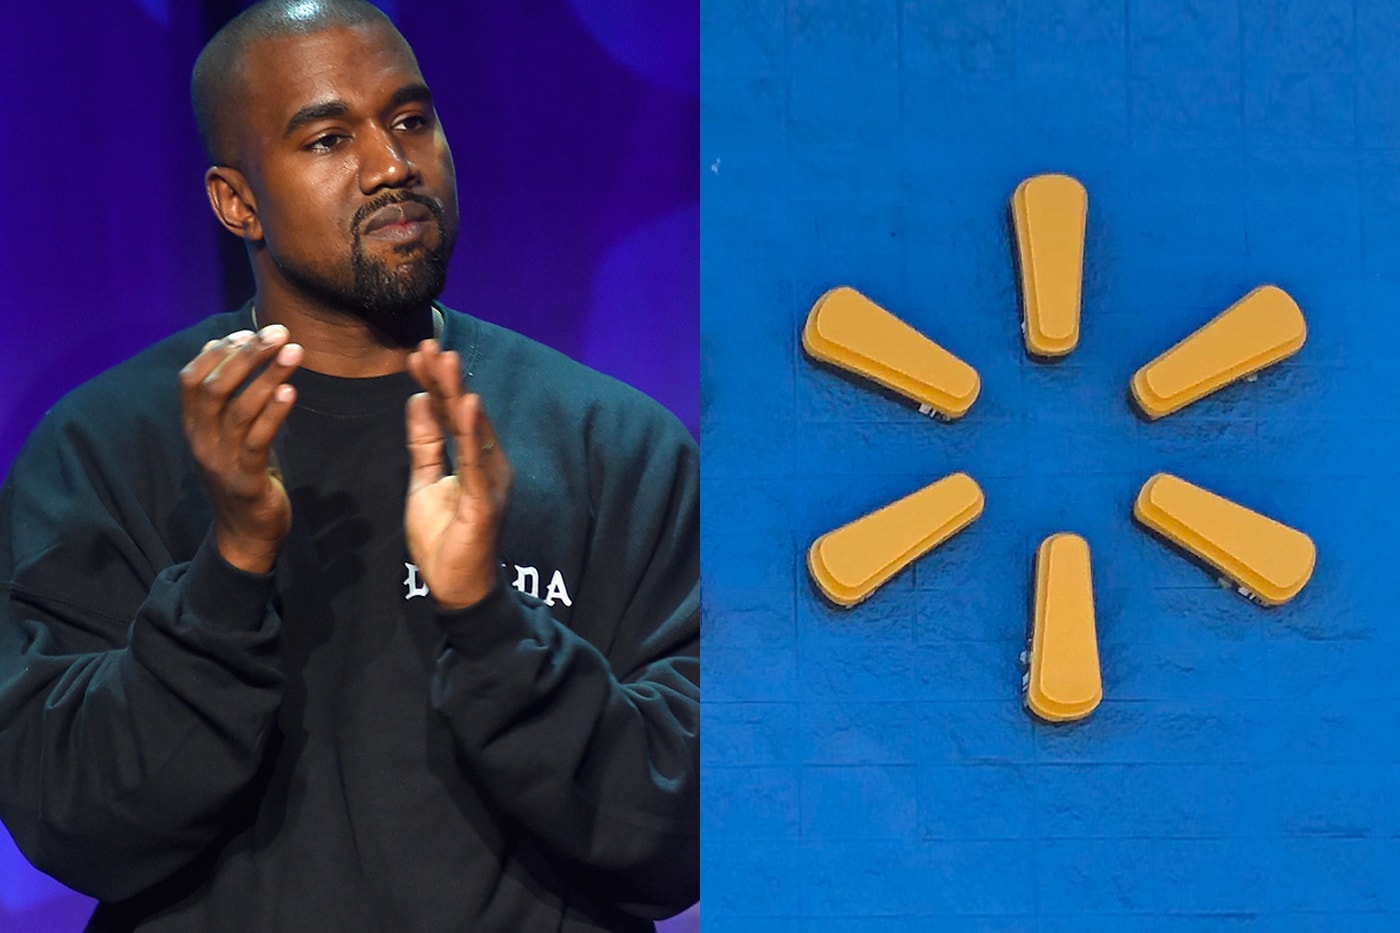 Walmart YEEZY Kanye West 2020 Trademark Dispute Info